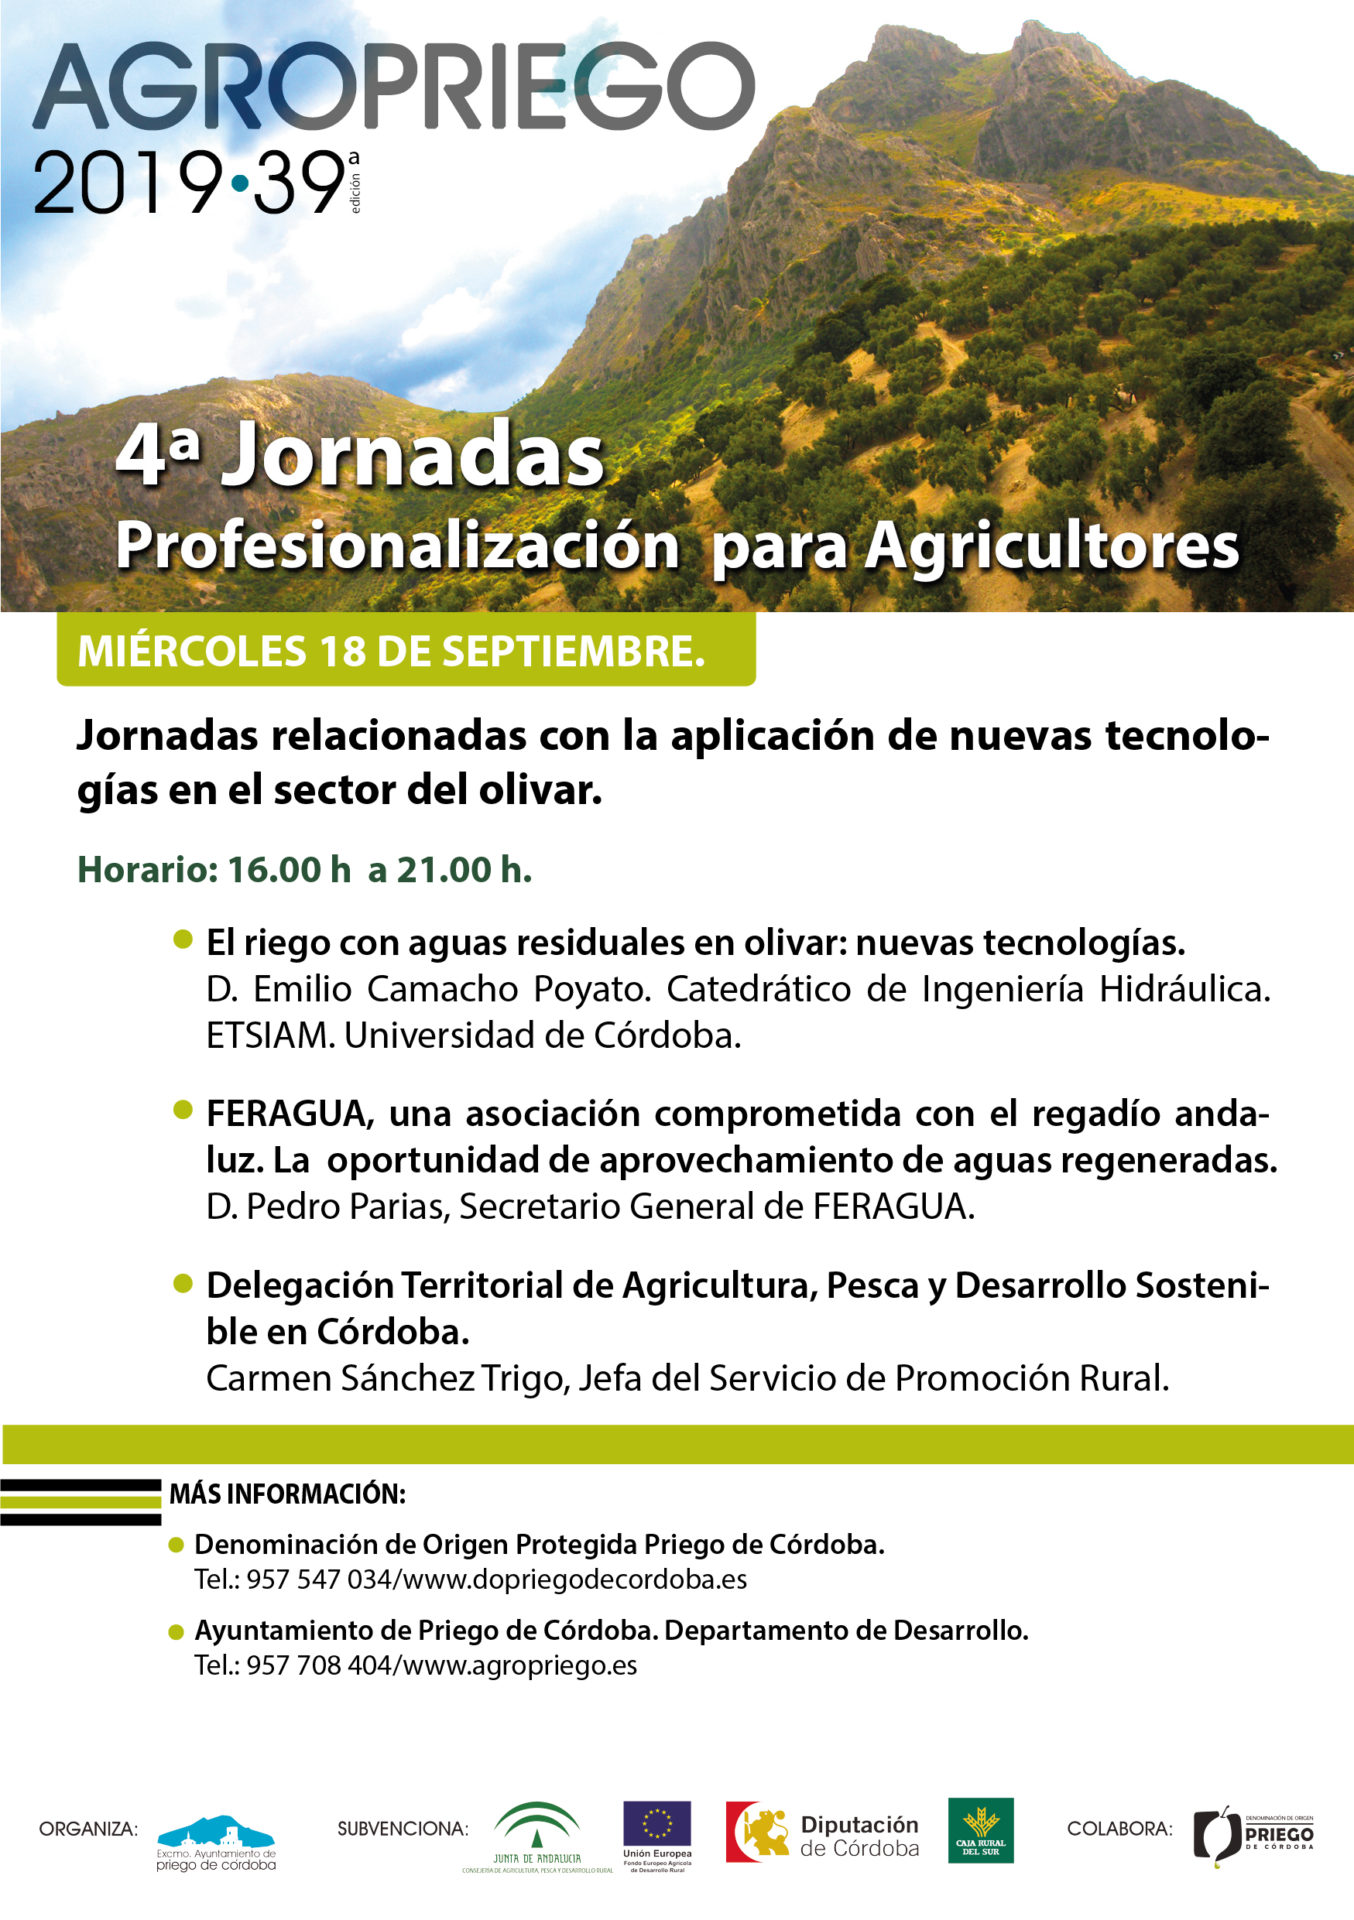 4ª Jornadas Agropriego Miércoles 18 de Septiembre 1